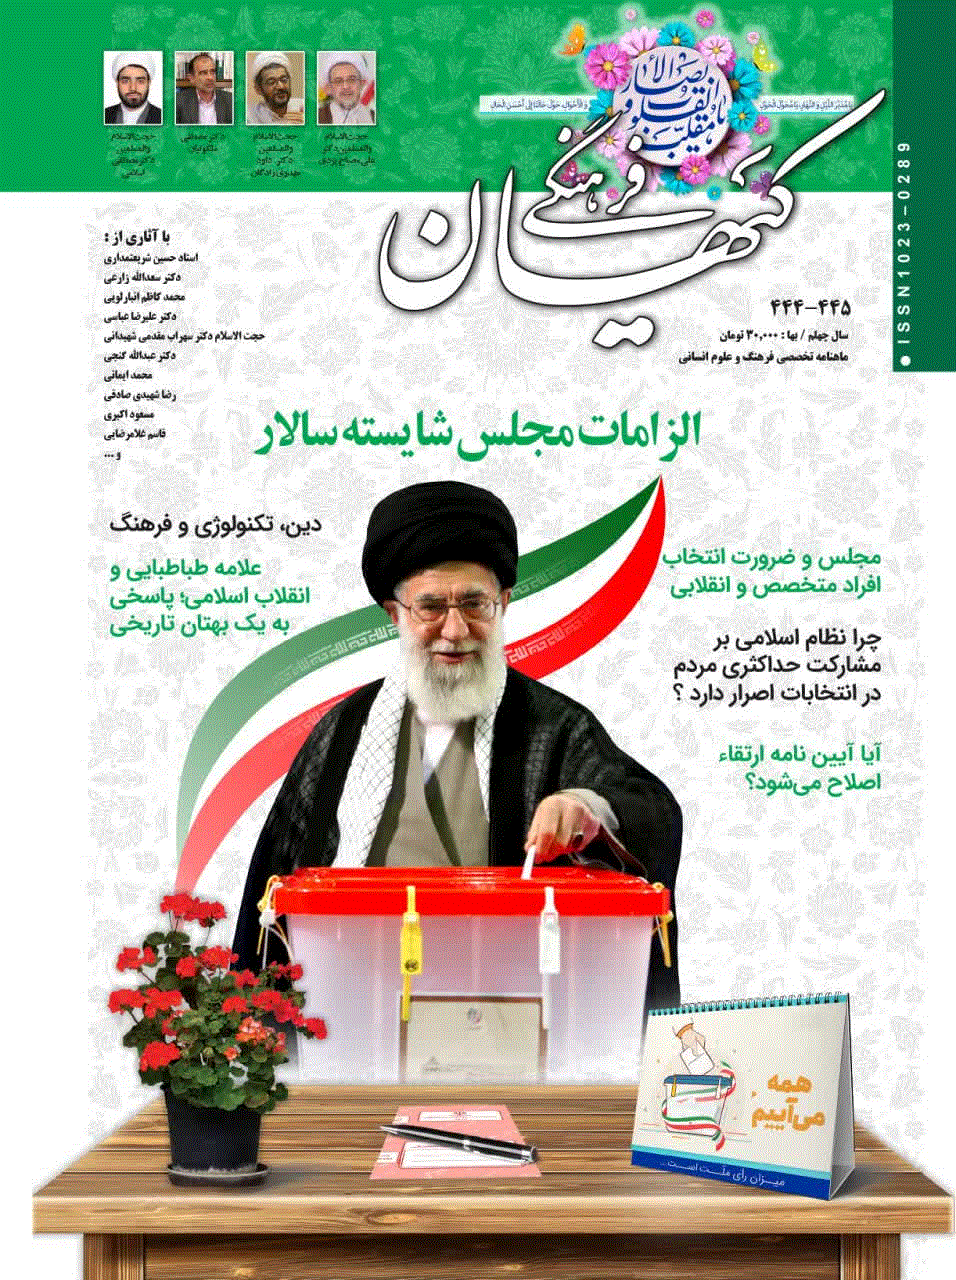 کیهان فرهنگی - خرداد و تیر 1389 - شماره 284 و 285